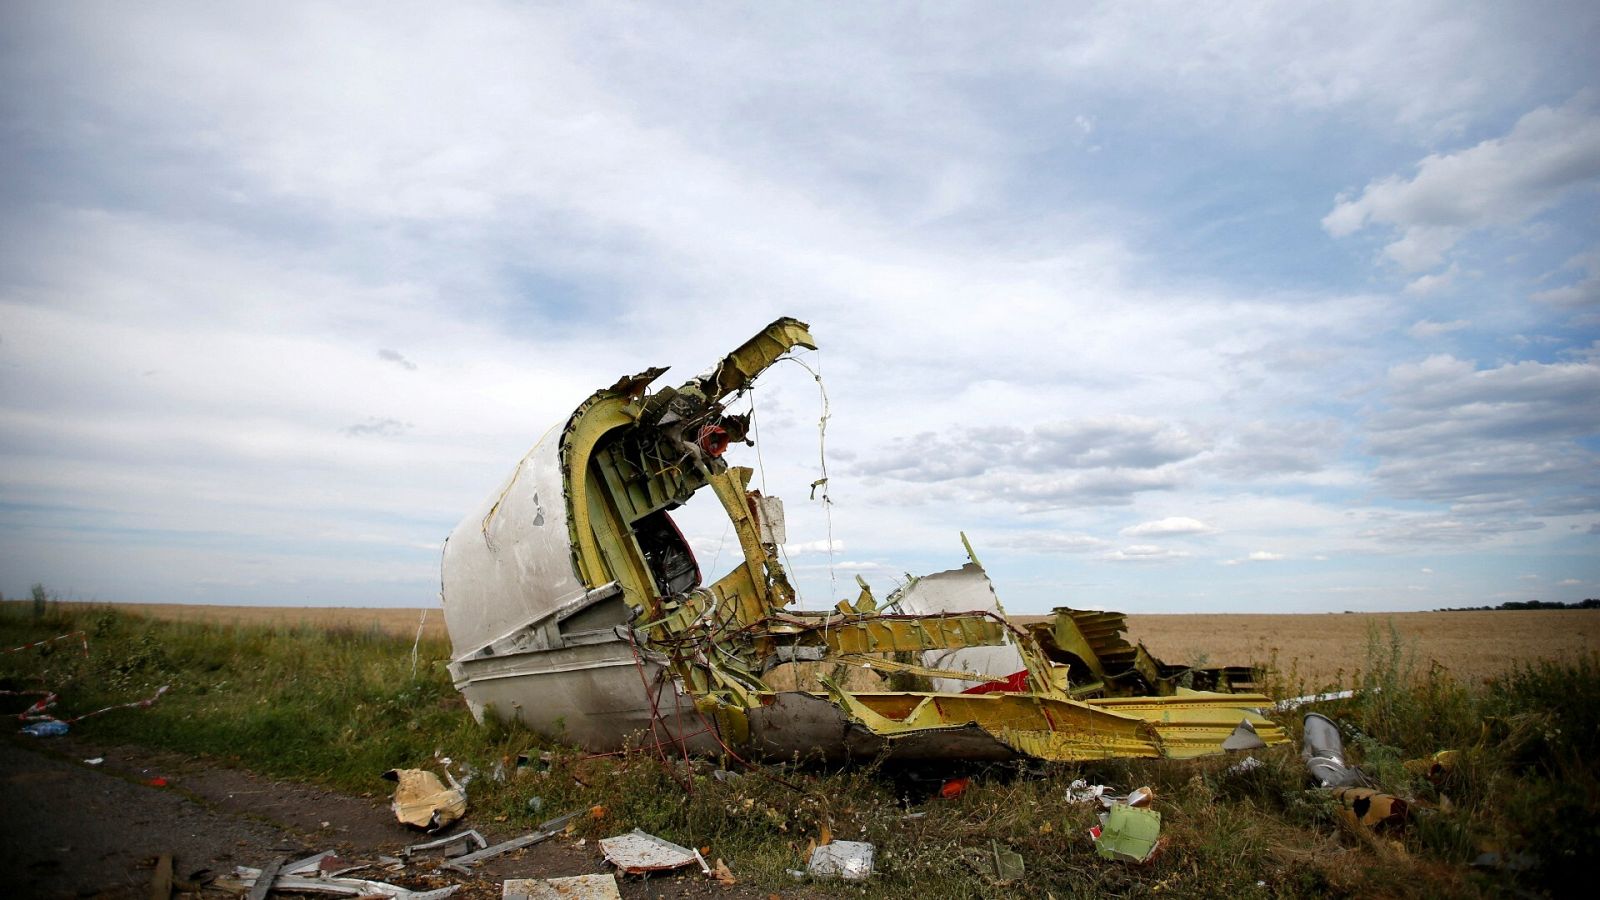 Archivo: restos del vuelo de Malaysia Airlines MH17 cerca de Grabovo, en la región de Donetsk, en Ucrania, en 2014. REUTERS/Maxim Zmeyev